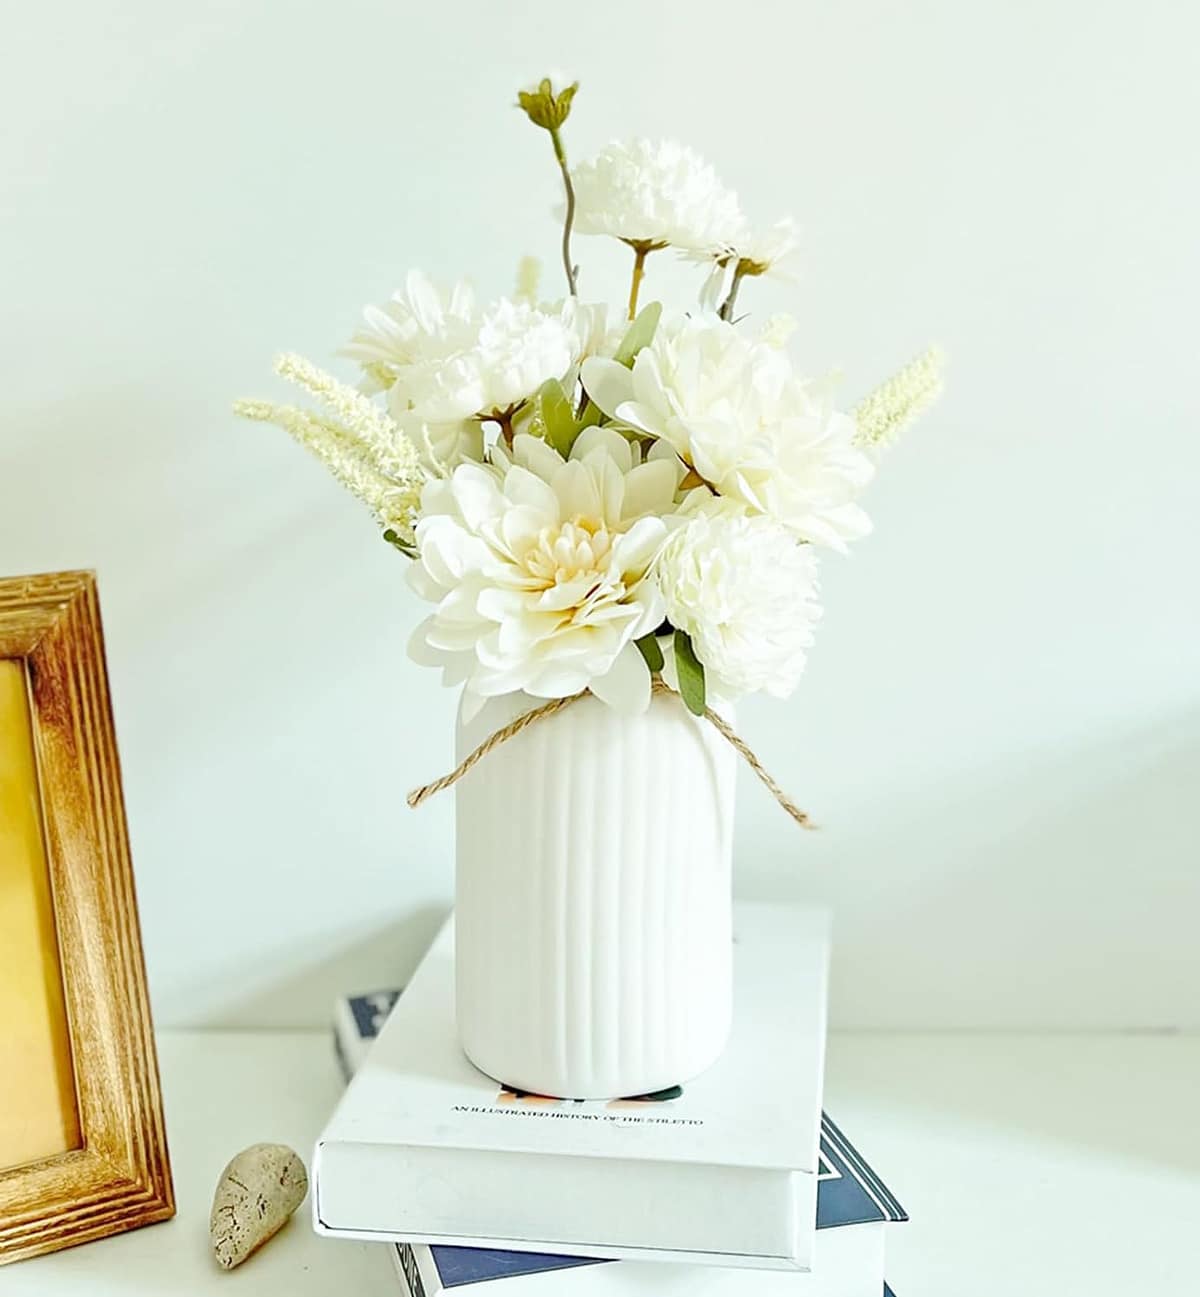 exquisite bouquet of artificial dahlias in chic white ceramic vase